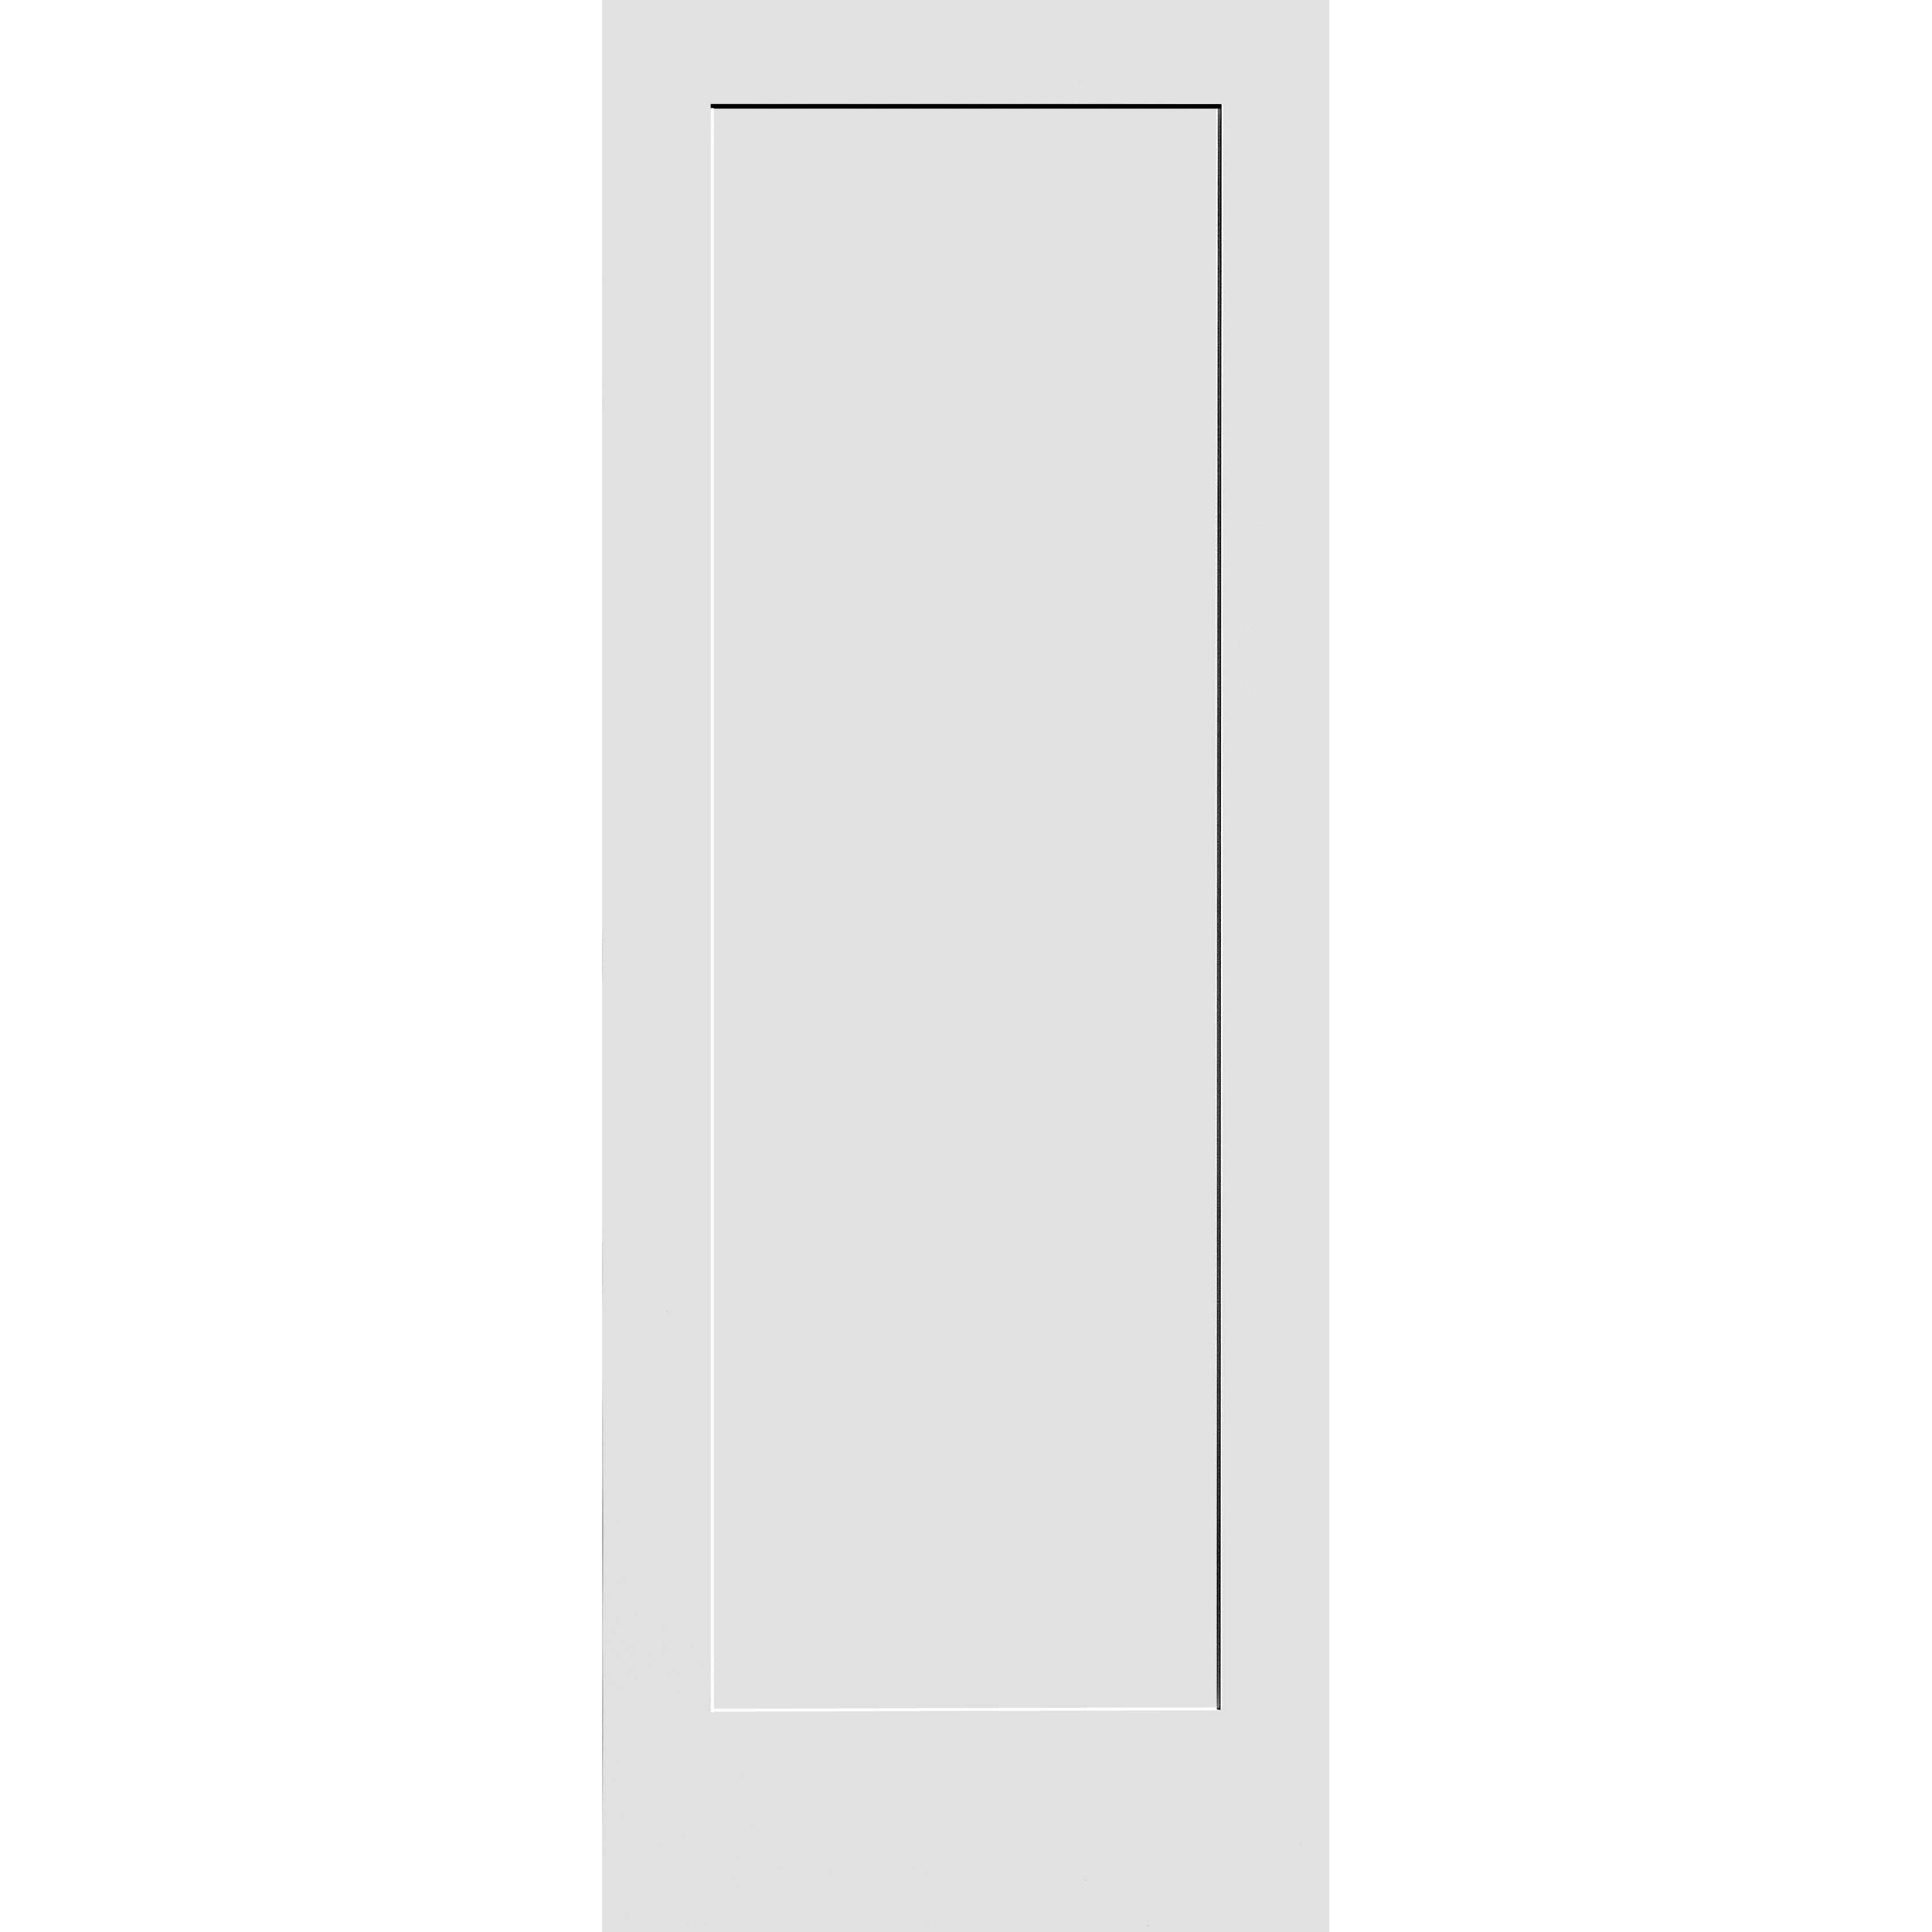 26X80 #8401 MDF PRIMED SHAKER PANEL INTERIOR DOOR